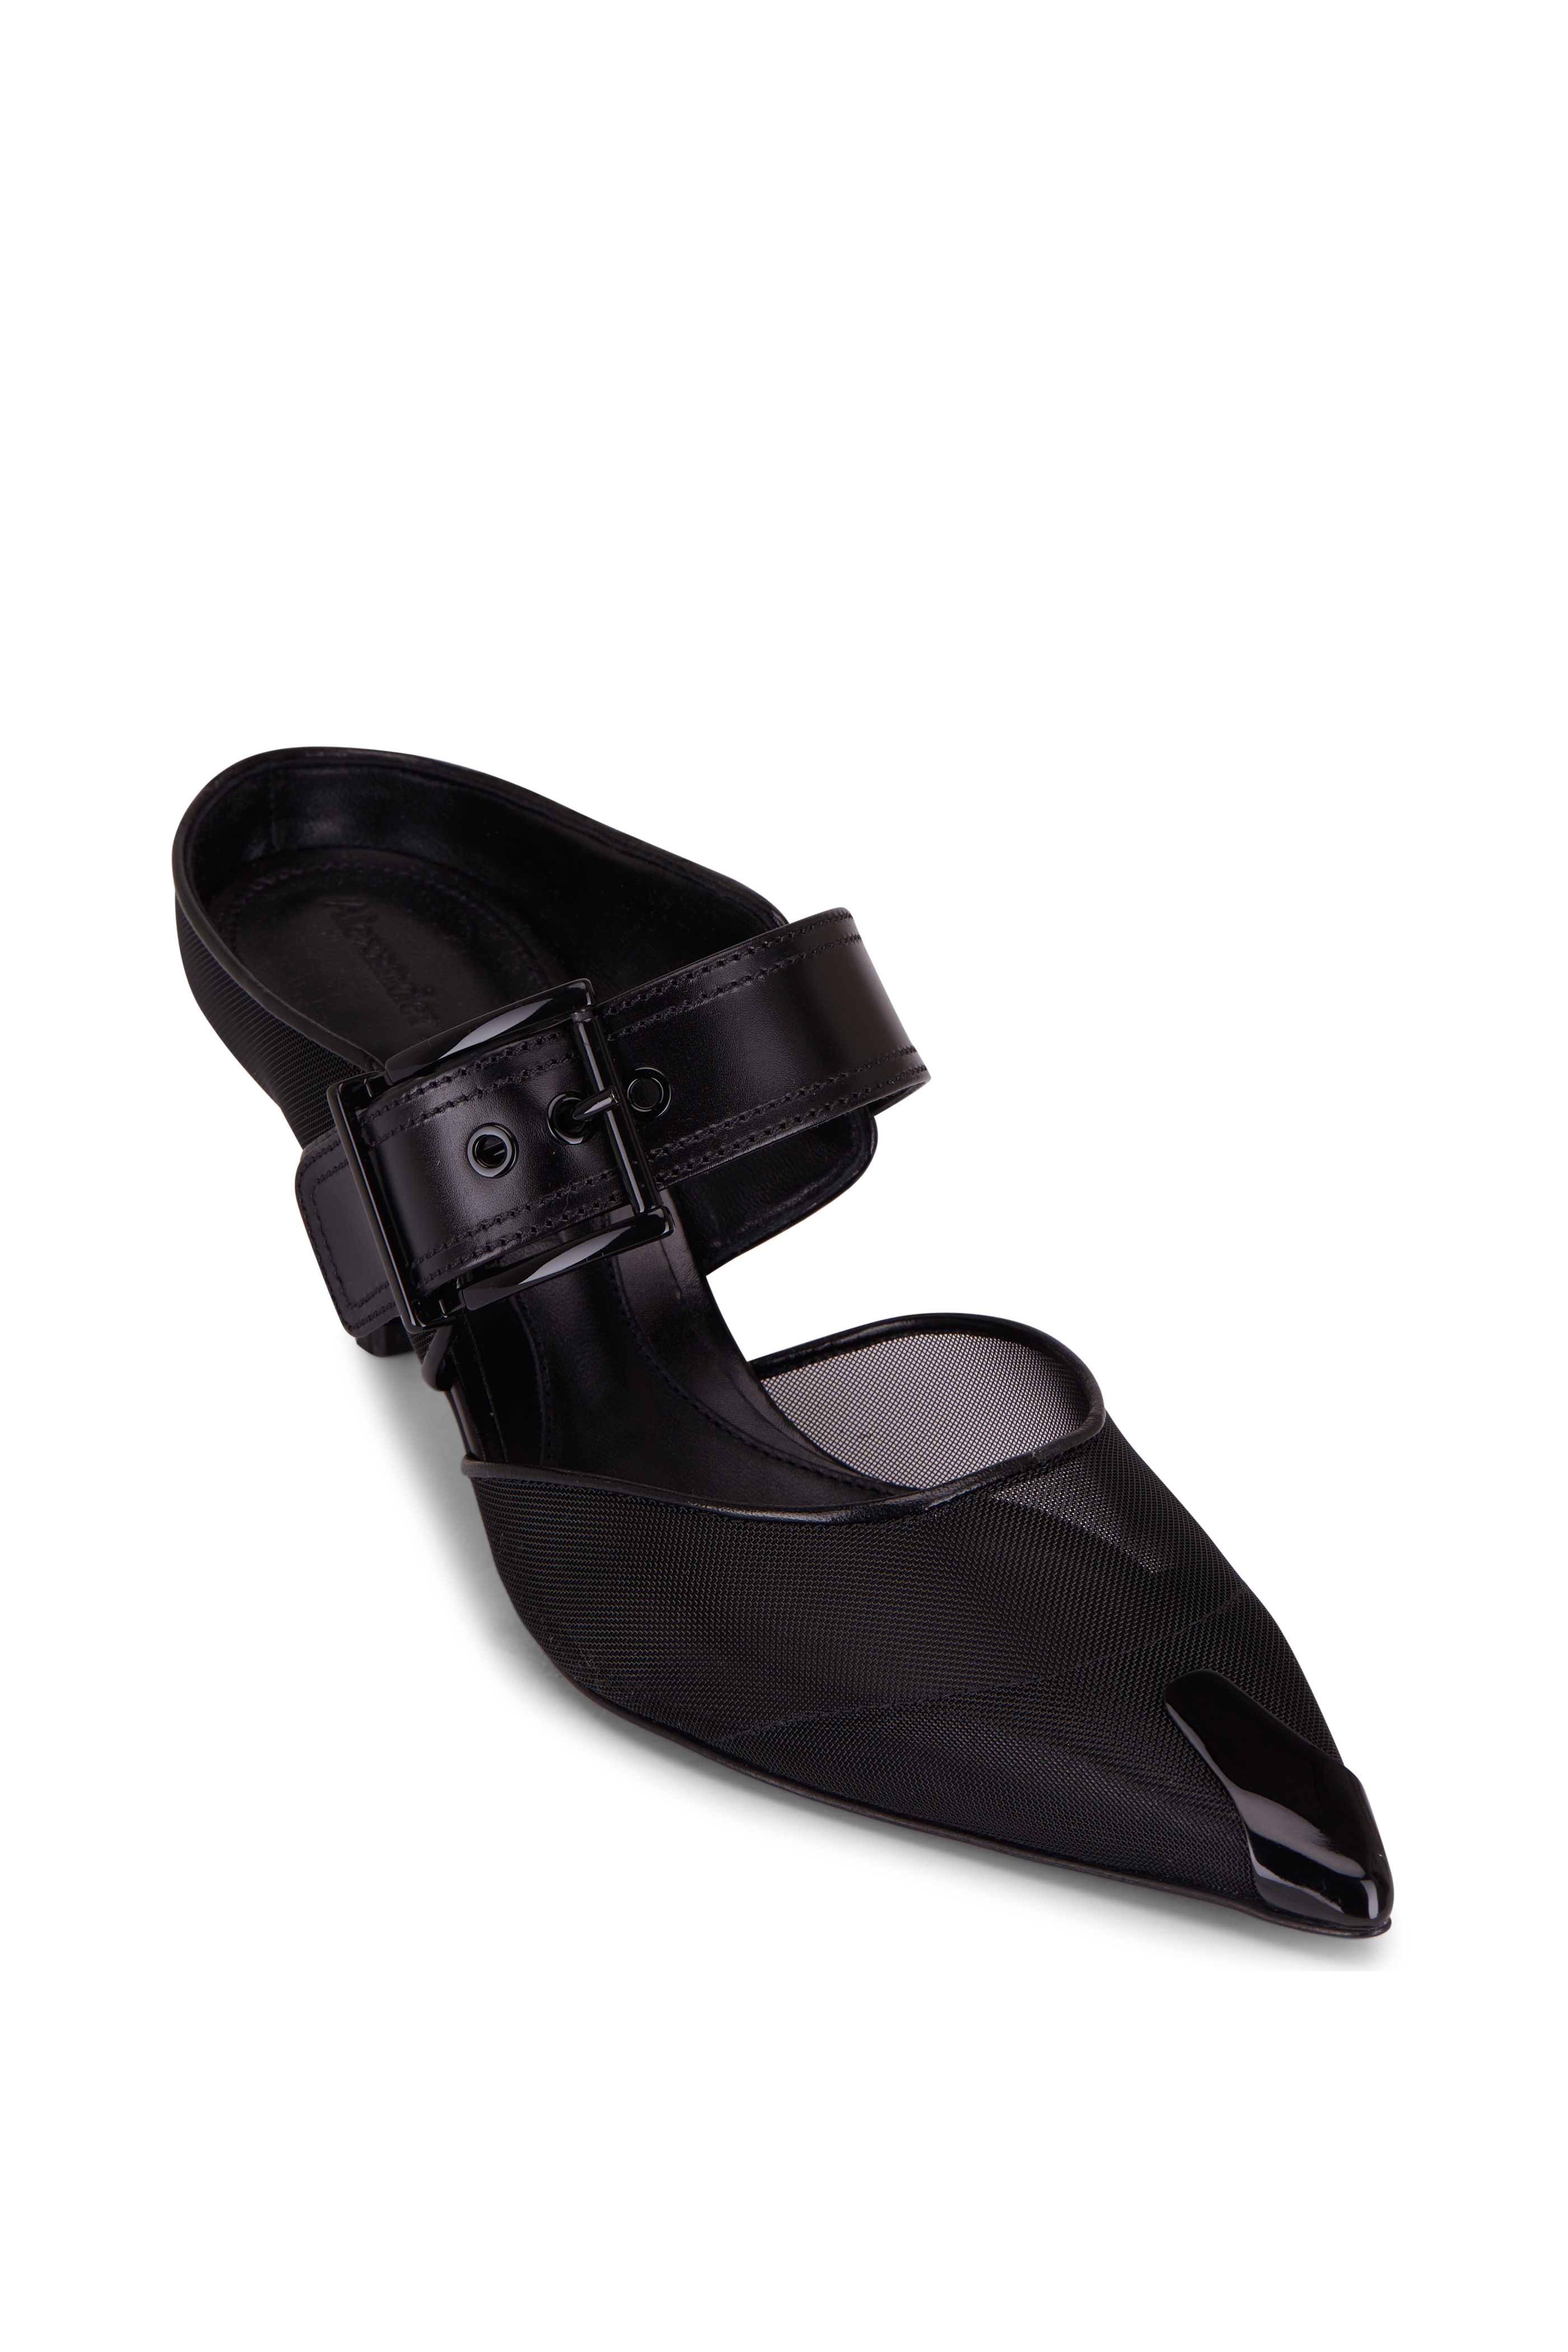 Alexander McQueen Heeled Buckle Black Sandals – AUMI 4